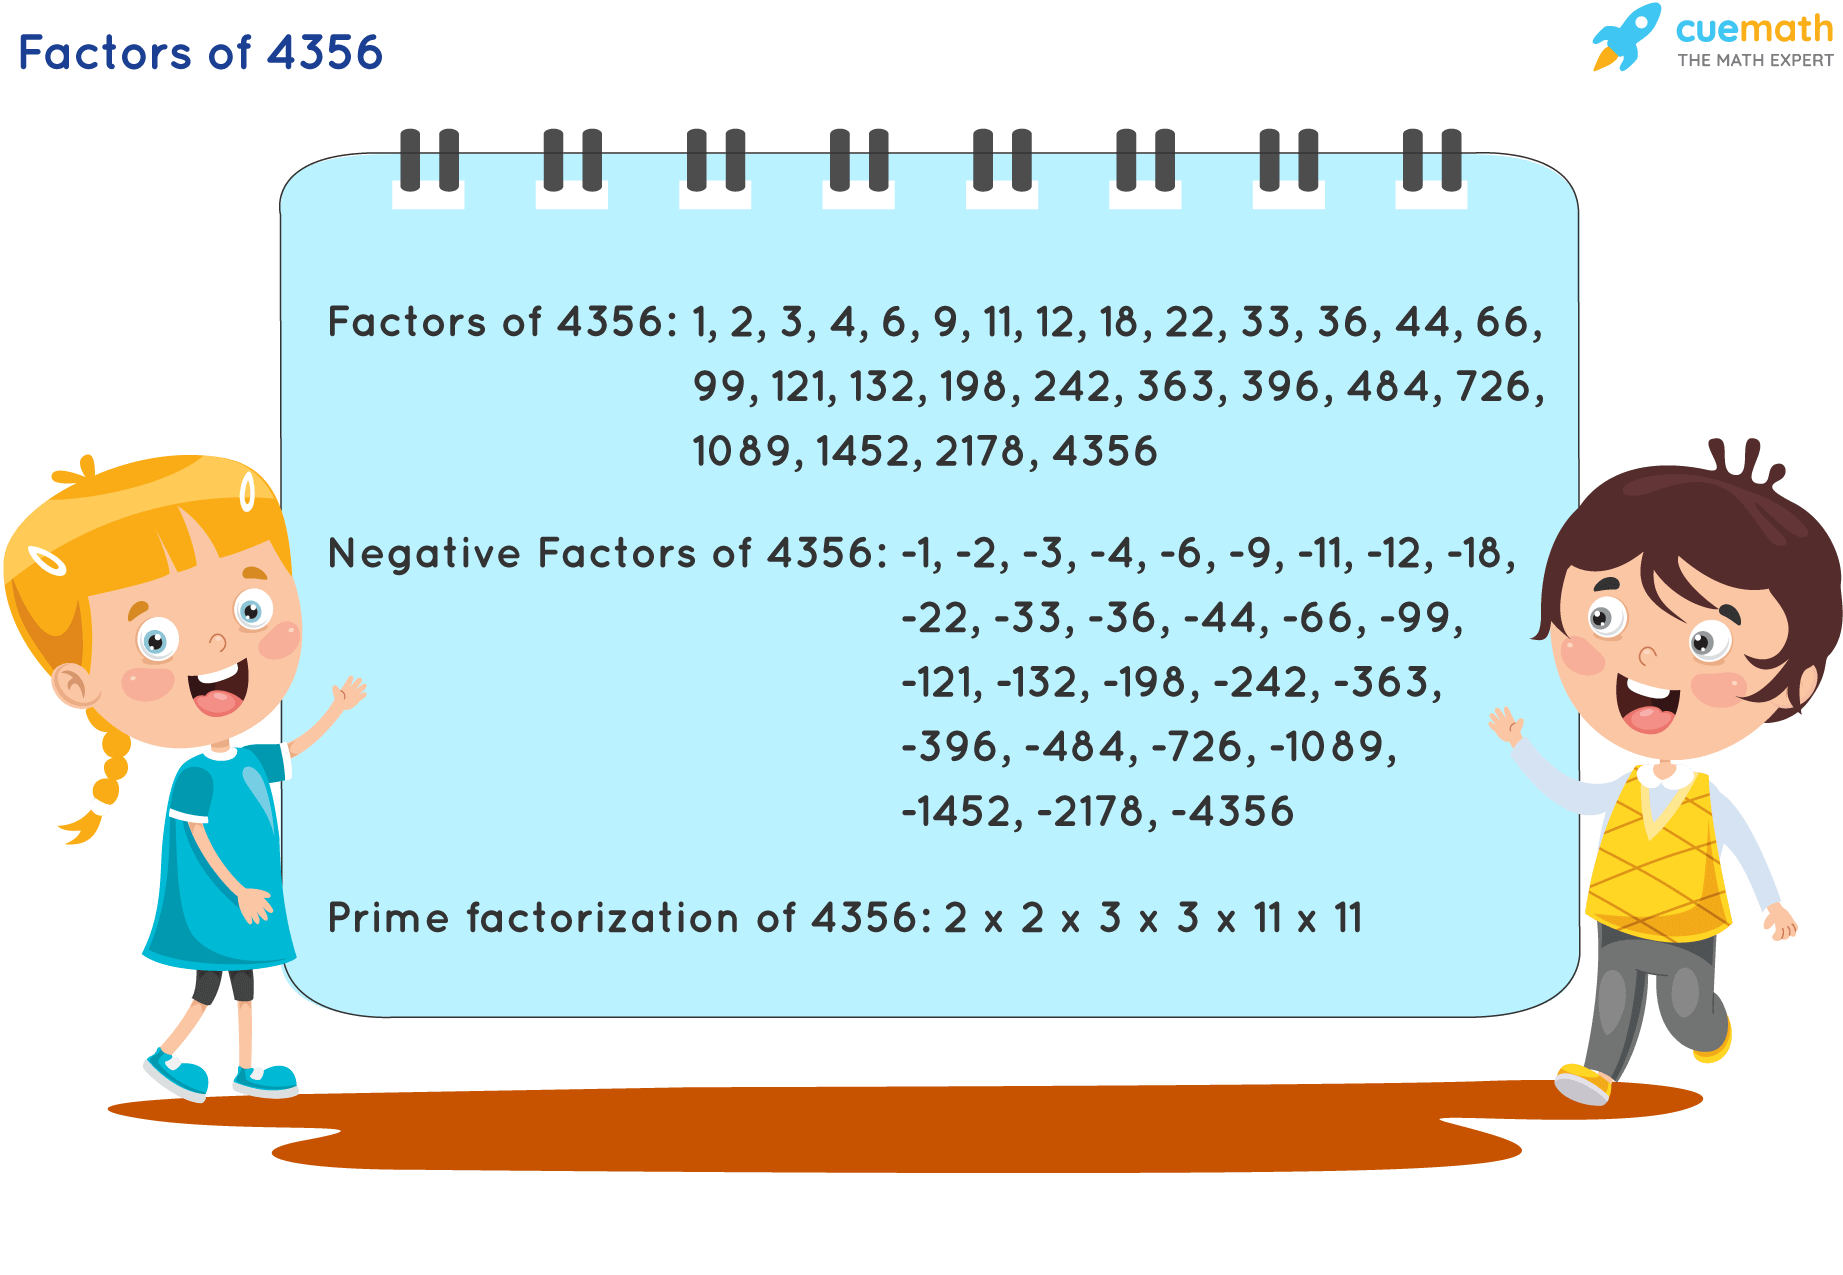 Factors of 4356